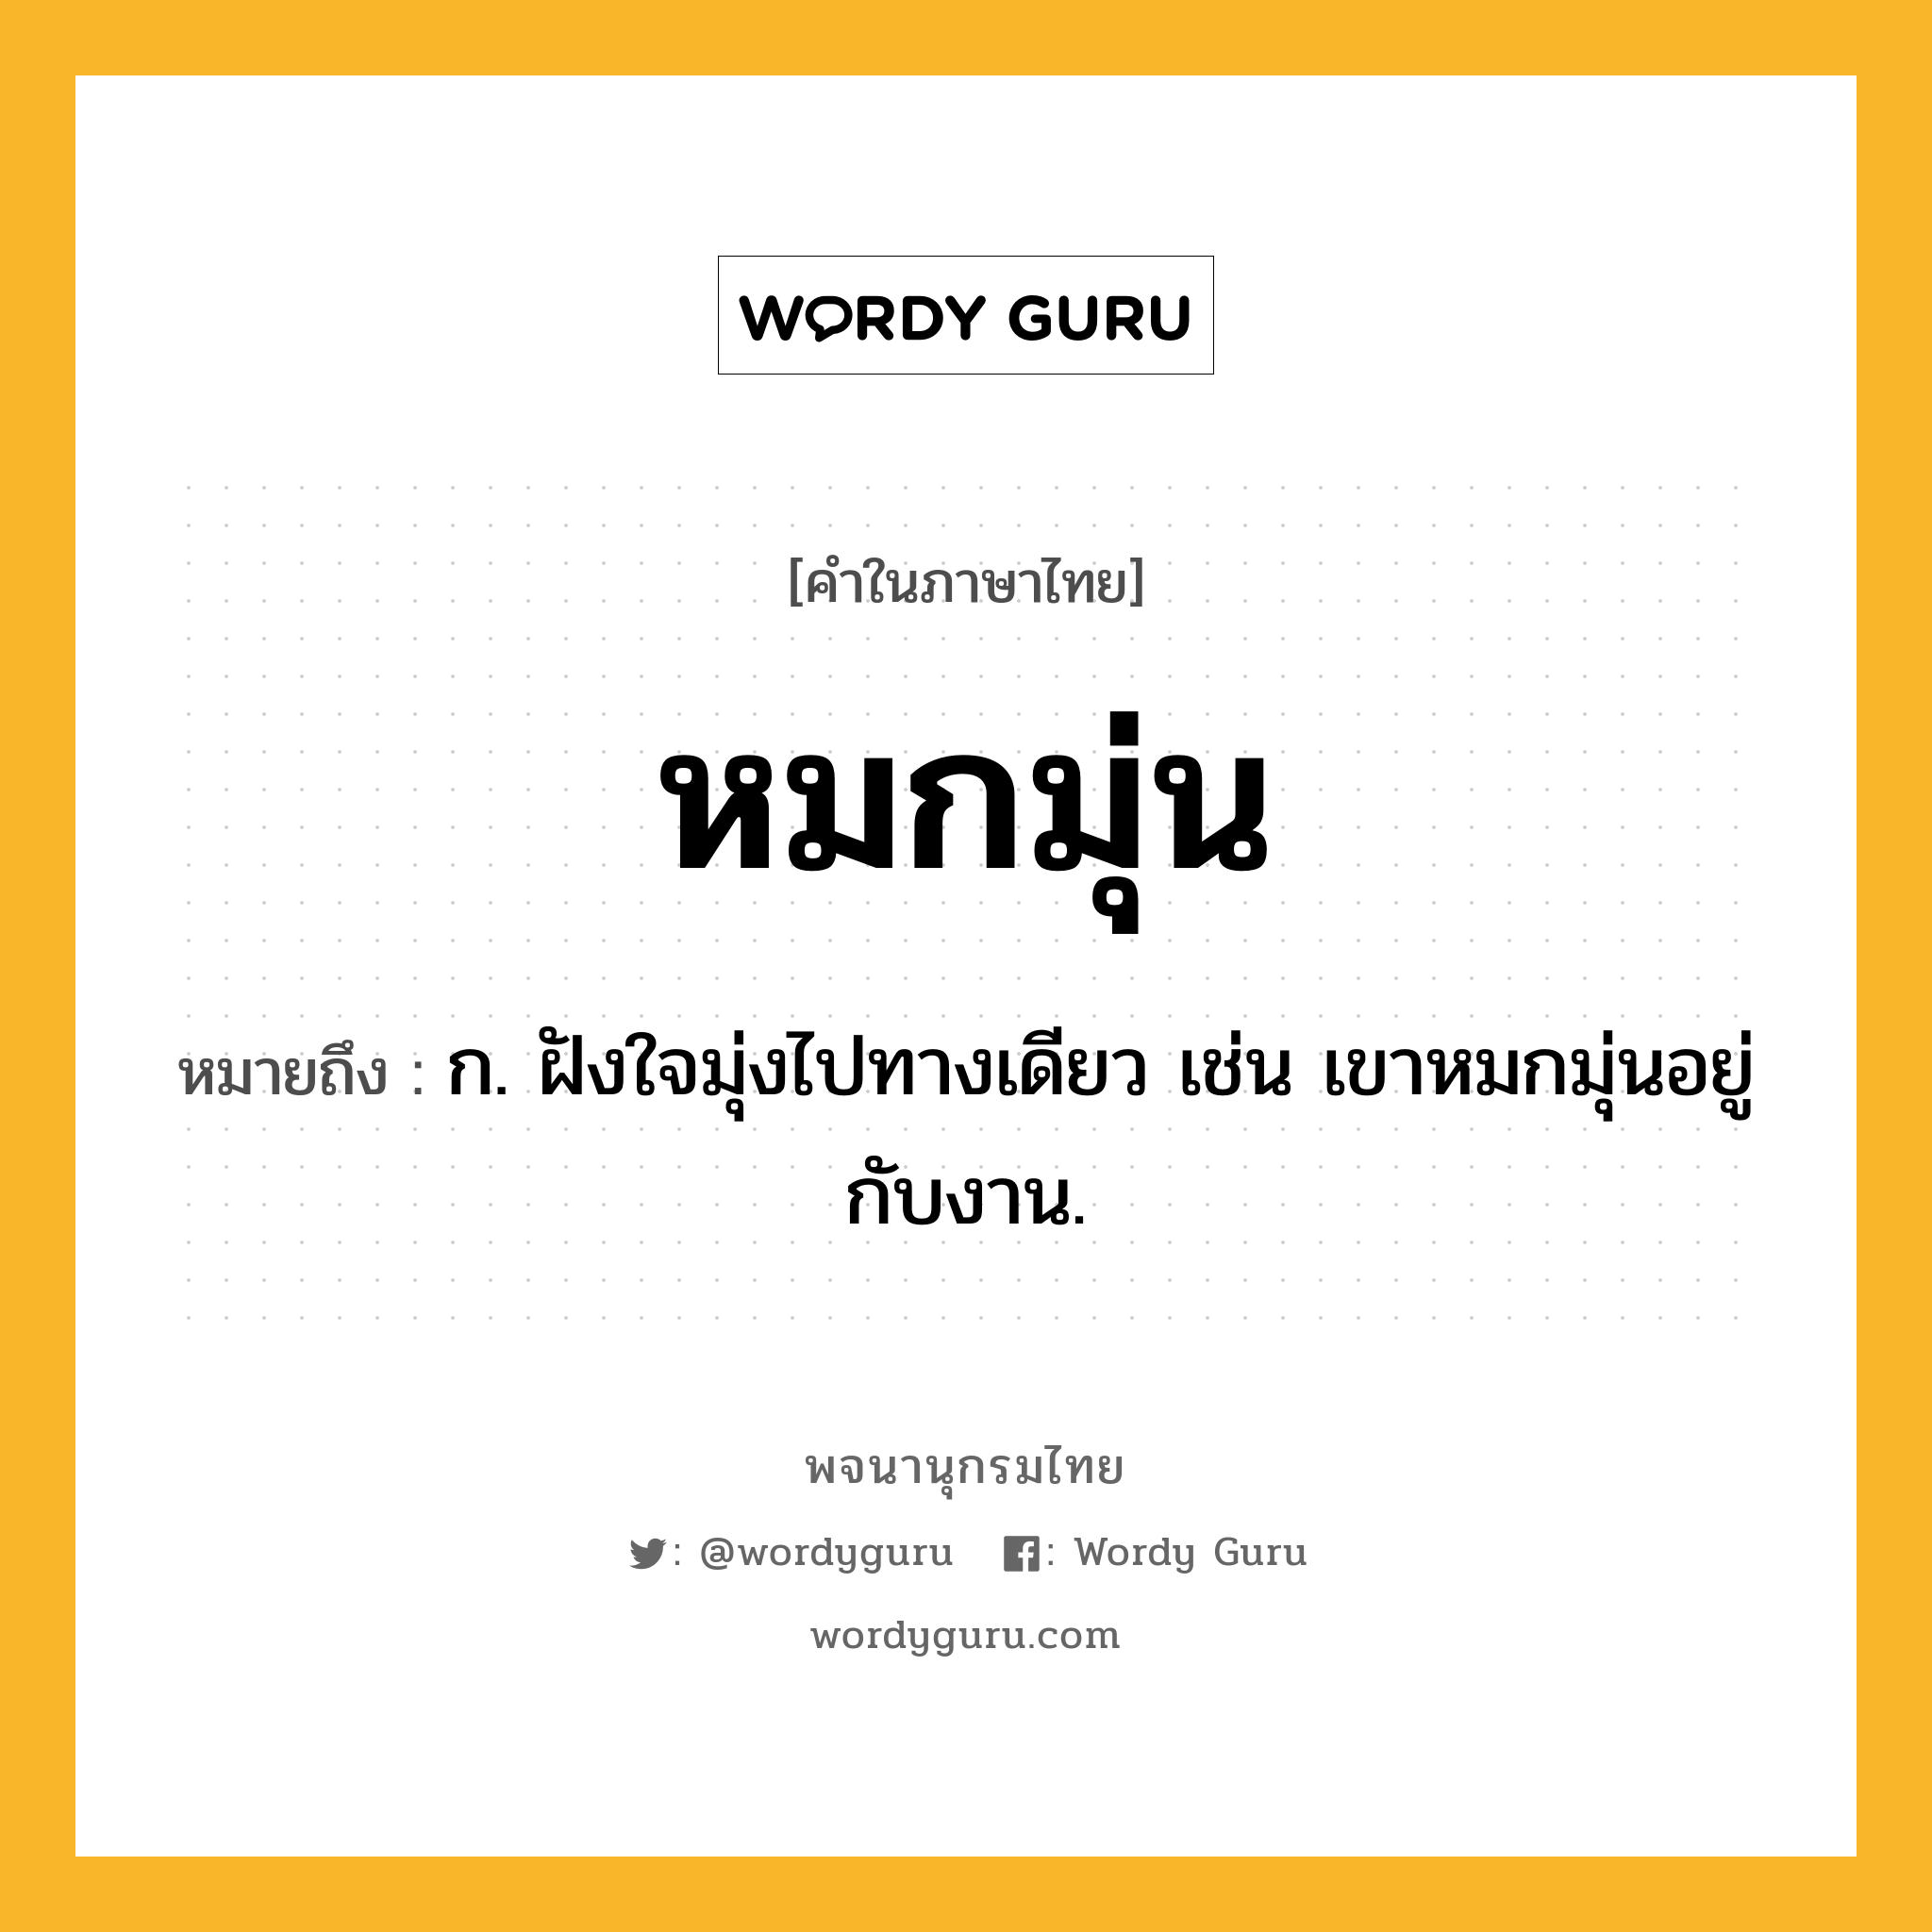 หมกมุ่น ความหมาย หมายถึงอะไร?, คำในภาษาไทย หมกมุ่น หมายถึง ก. ฝังใจมุ่งไปทางเดียว เช่น เขาหมกมุ่นอยู่กับงาน.